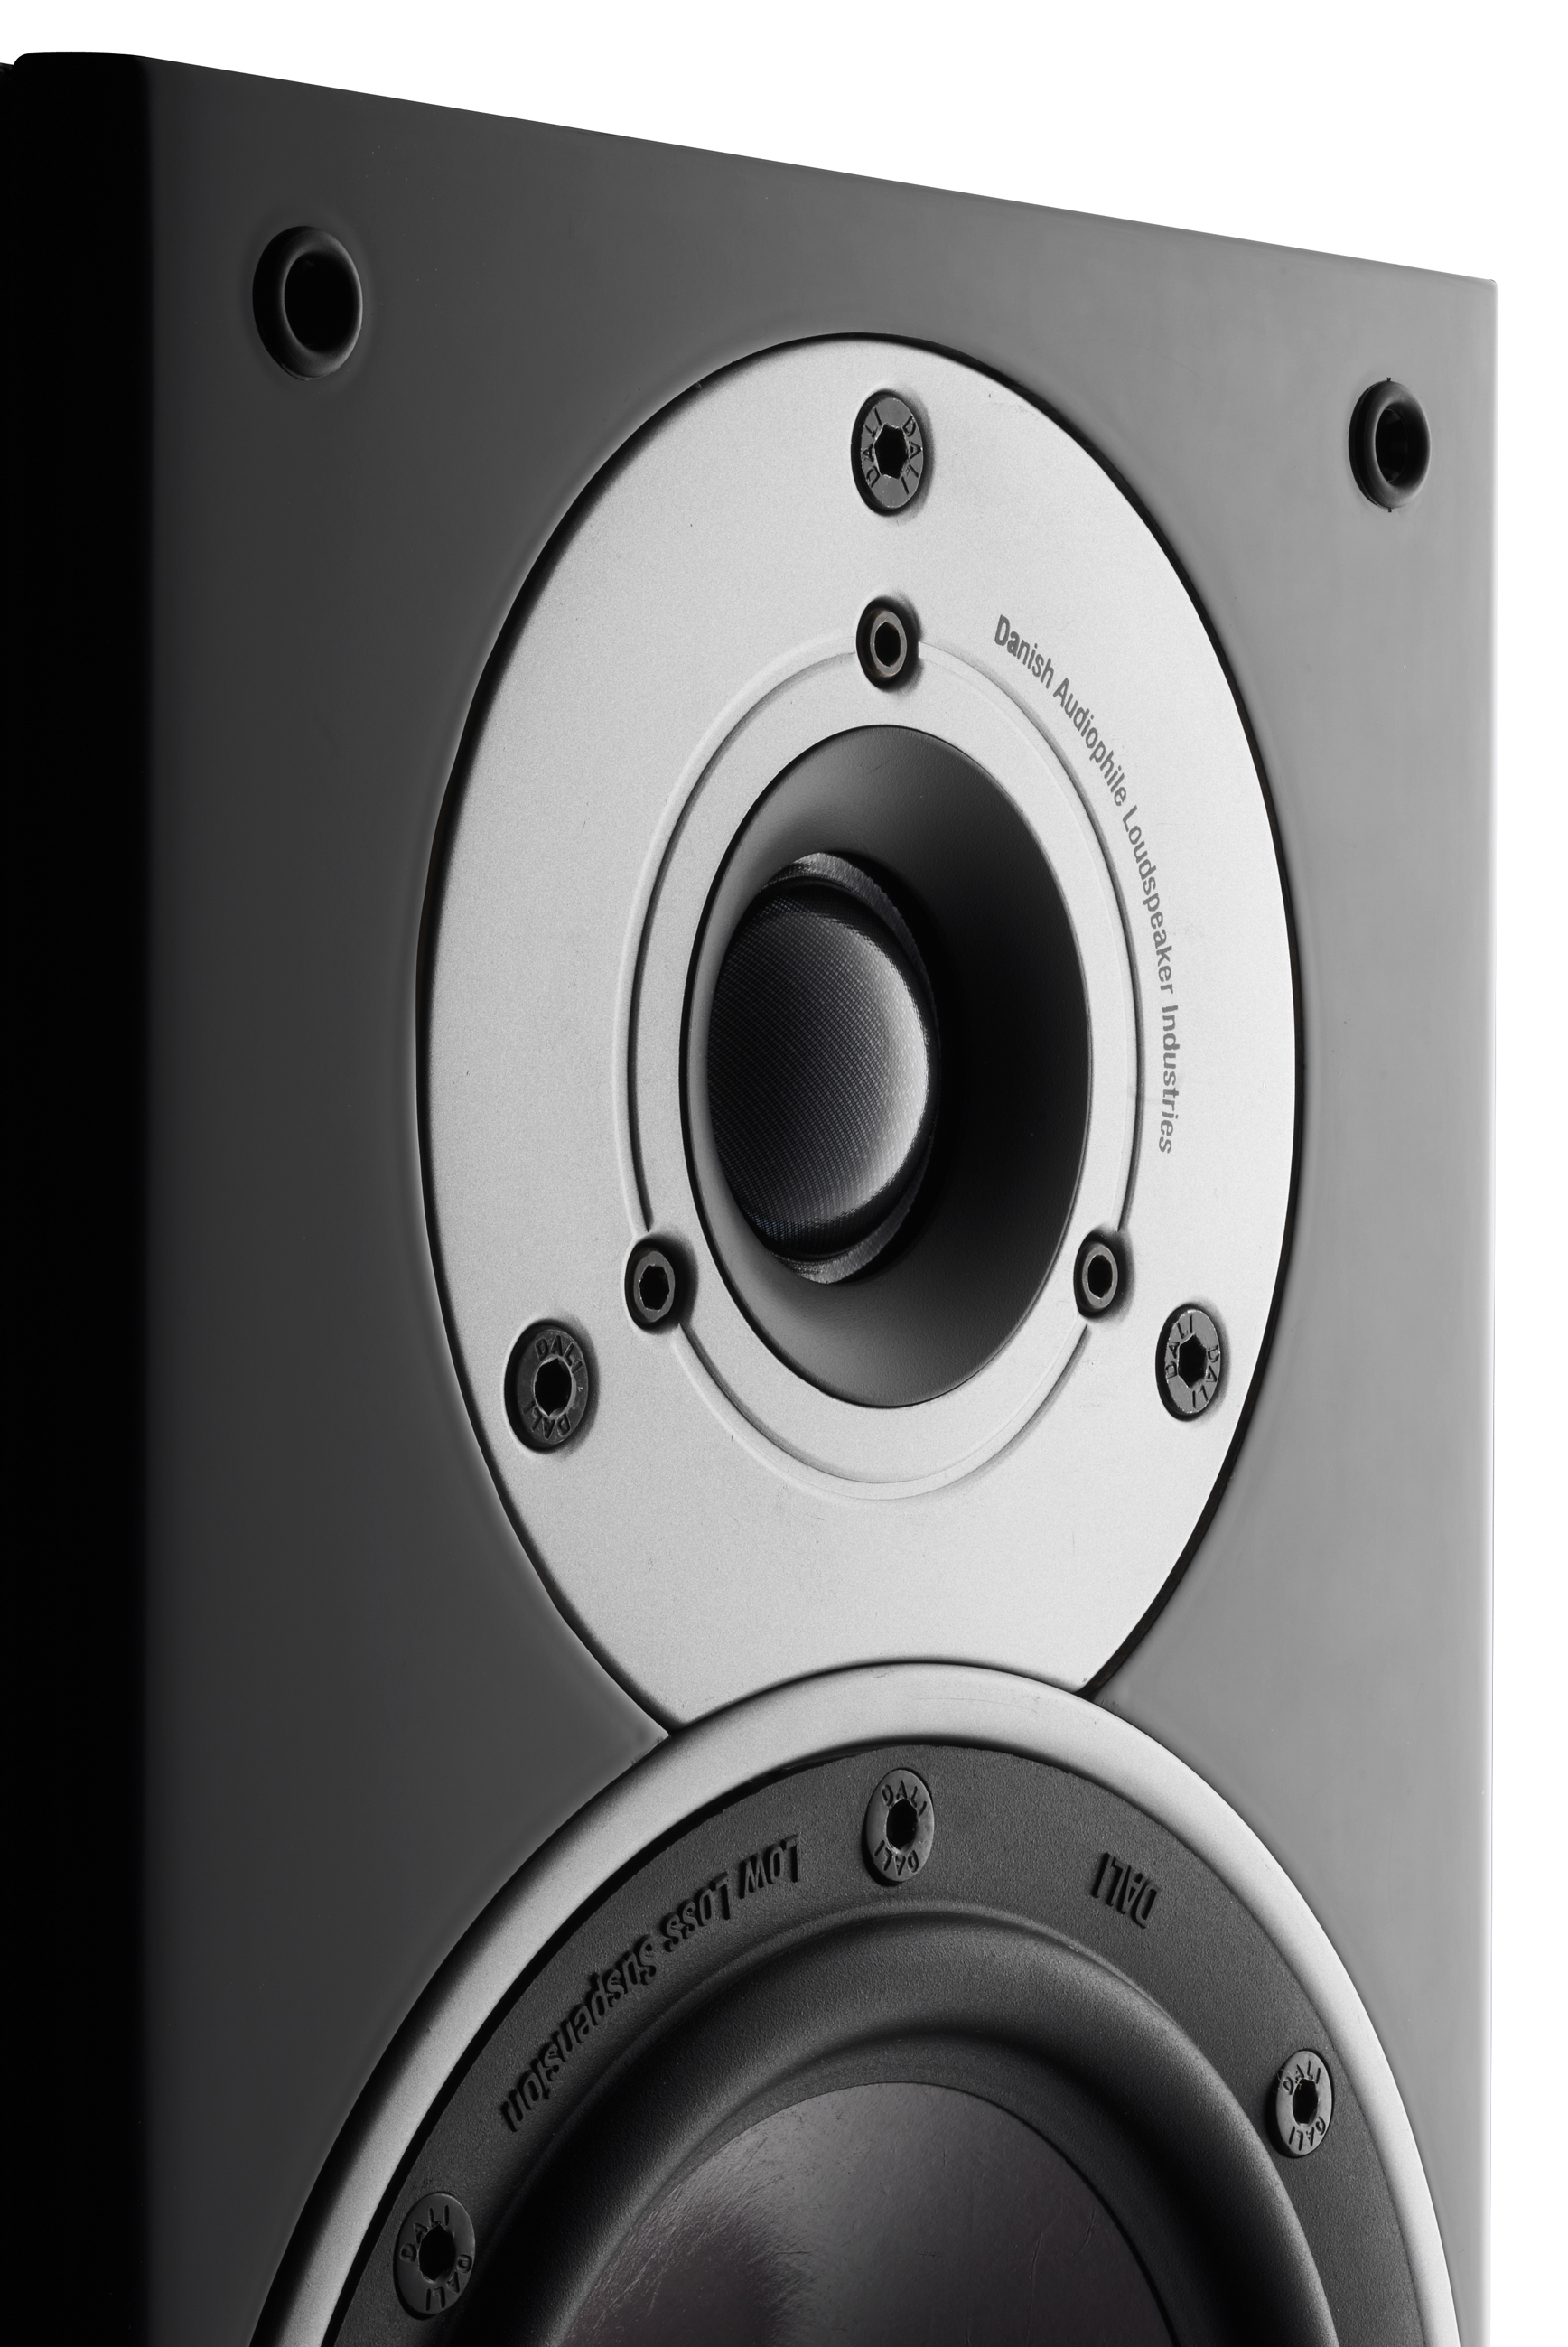 DALI ZENSOR 1 | The ideal all-round stereo loudspeaker